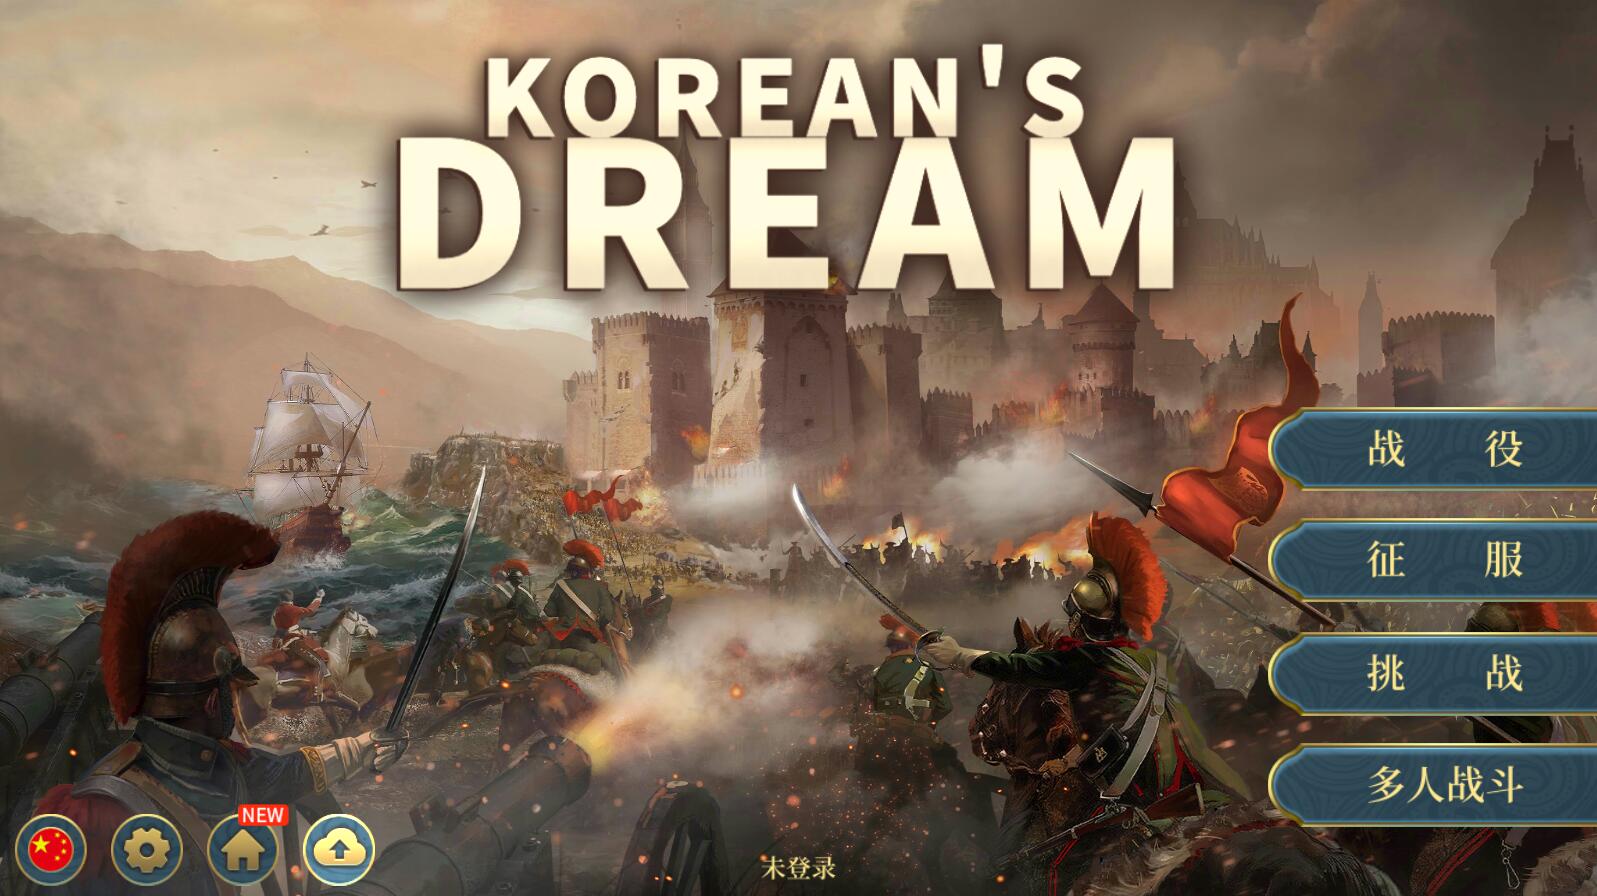 欧陆战争6韩国的梦想 中文内购版 安卓战棋SLG游戏